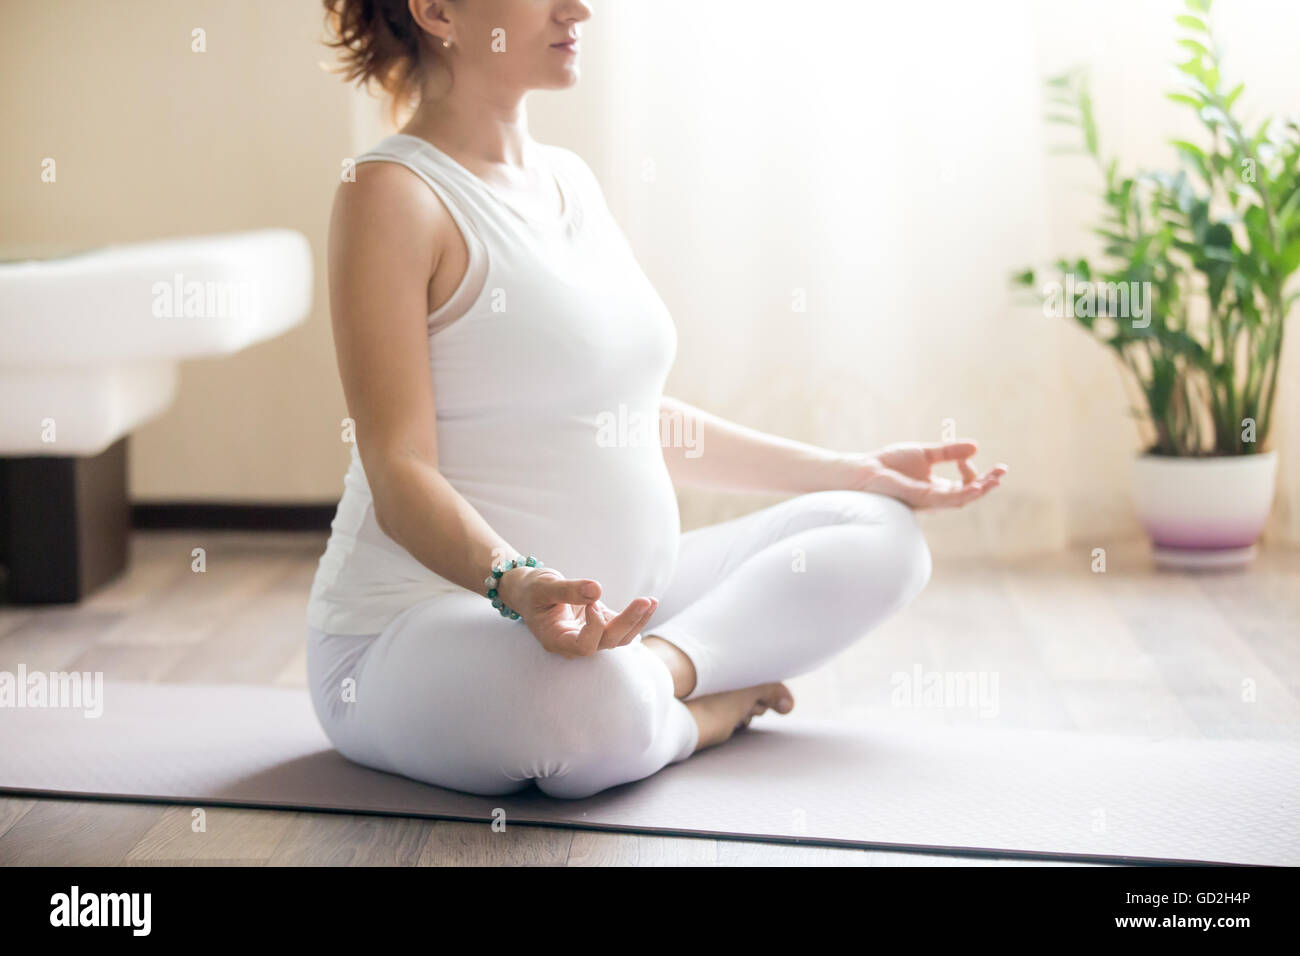 Grossesse en santé et de remise en forme de yoga. Les jeunes femmes enceintes yoga woman working out in living room interior. Modèle enceinte assis Banque D'Images